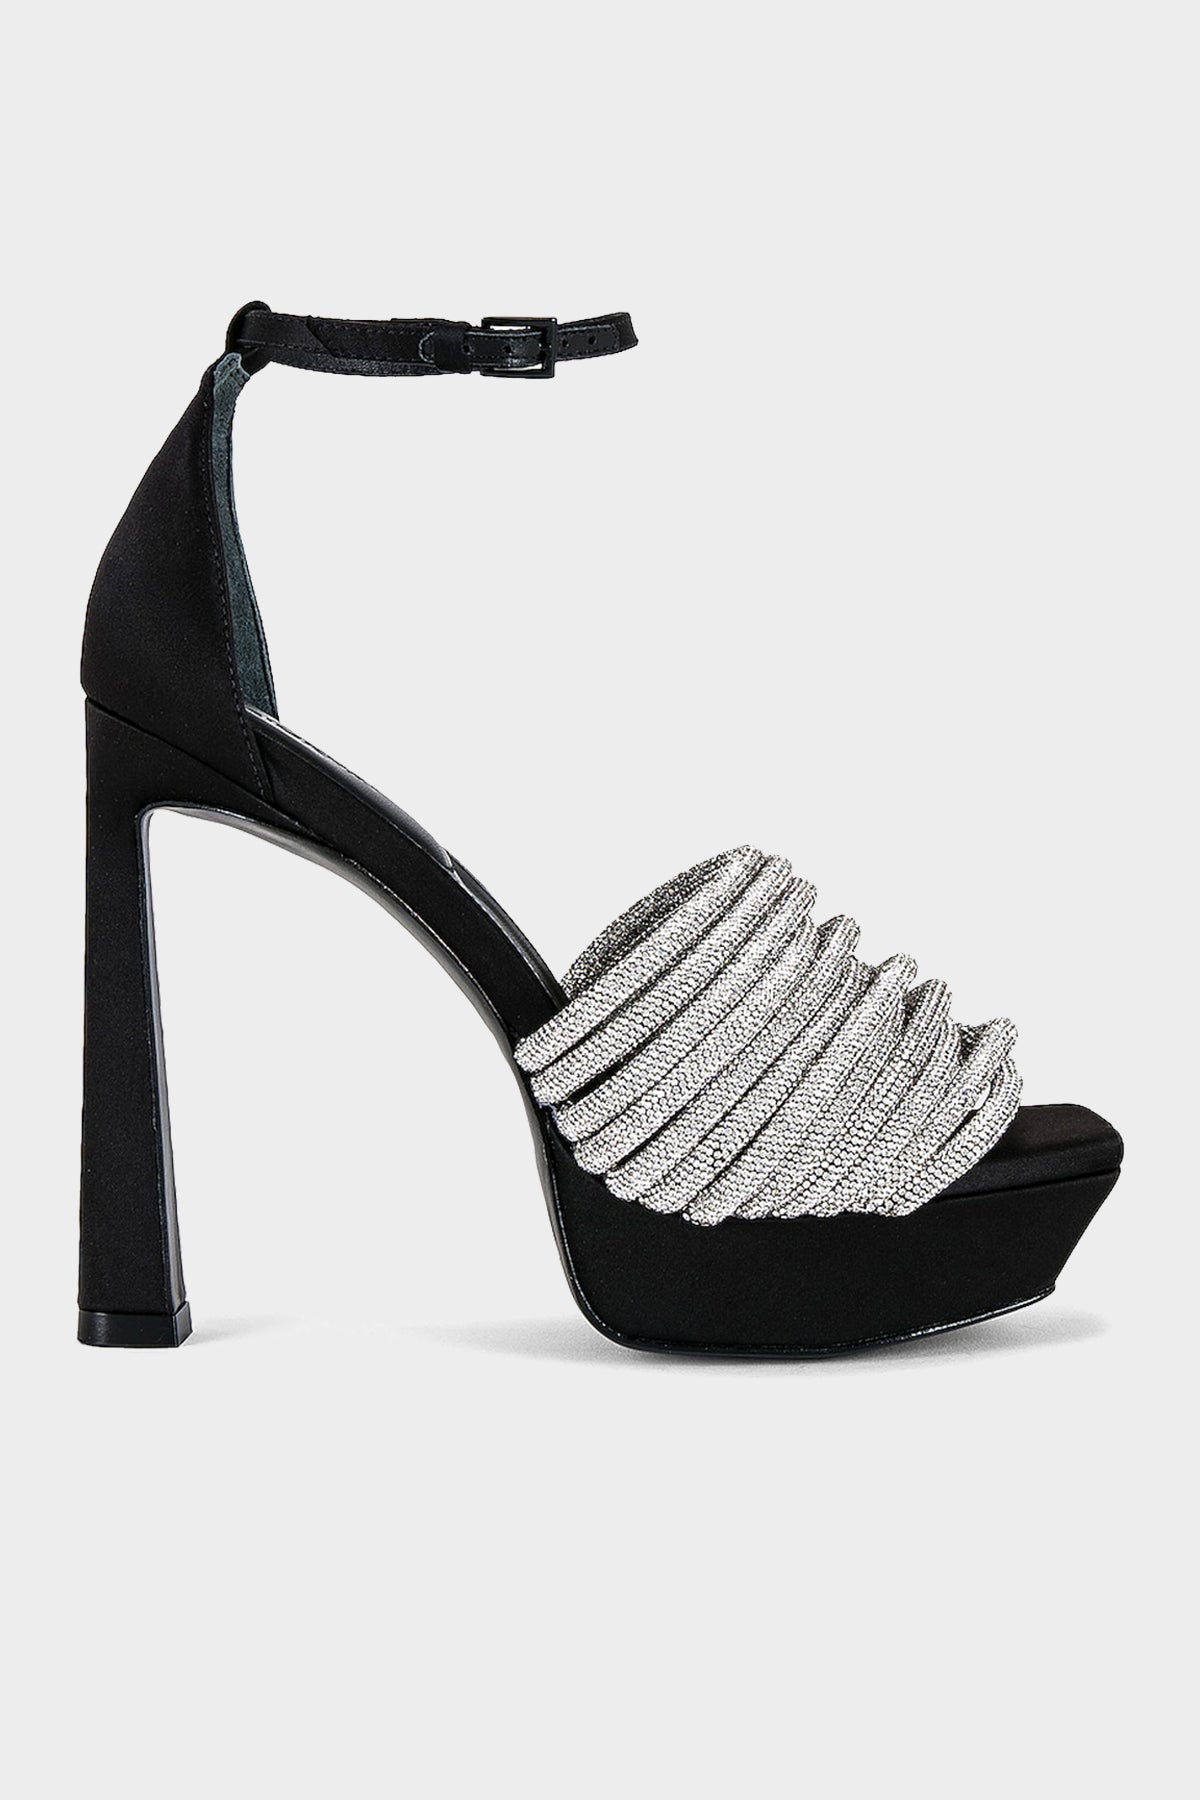 Lena Ankle-Strap Platform Sandal in Black - shop-olivia.com